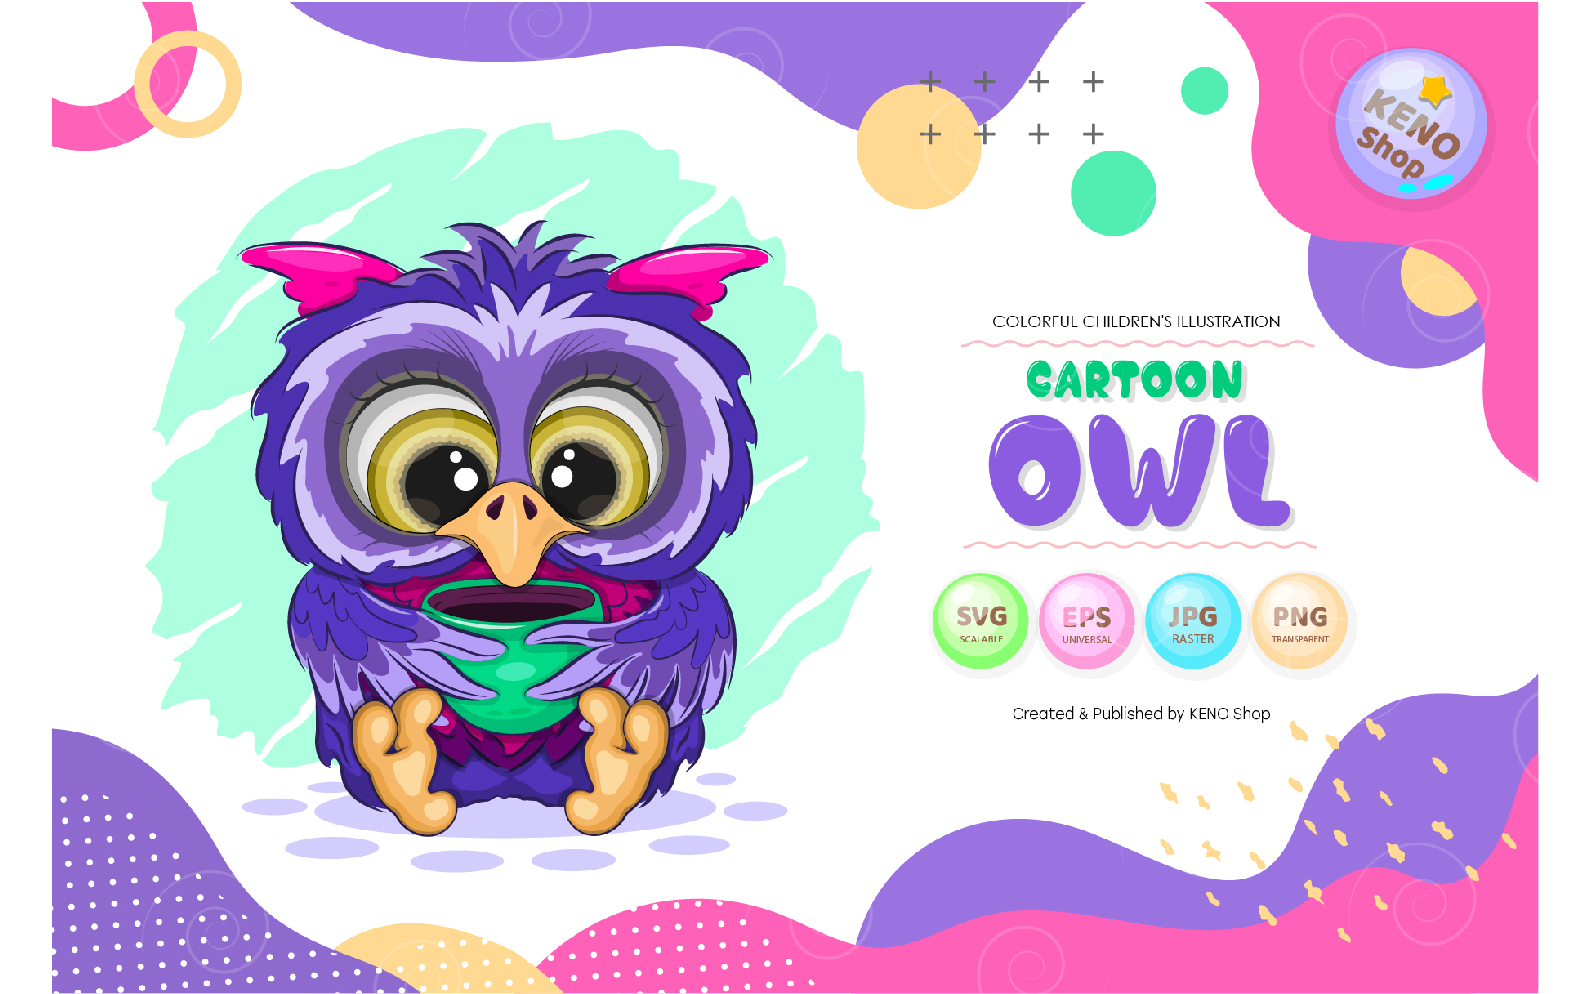 Cartoon Owl With a Cup Vector